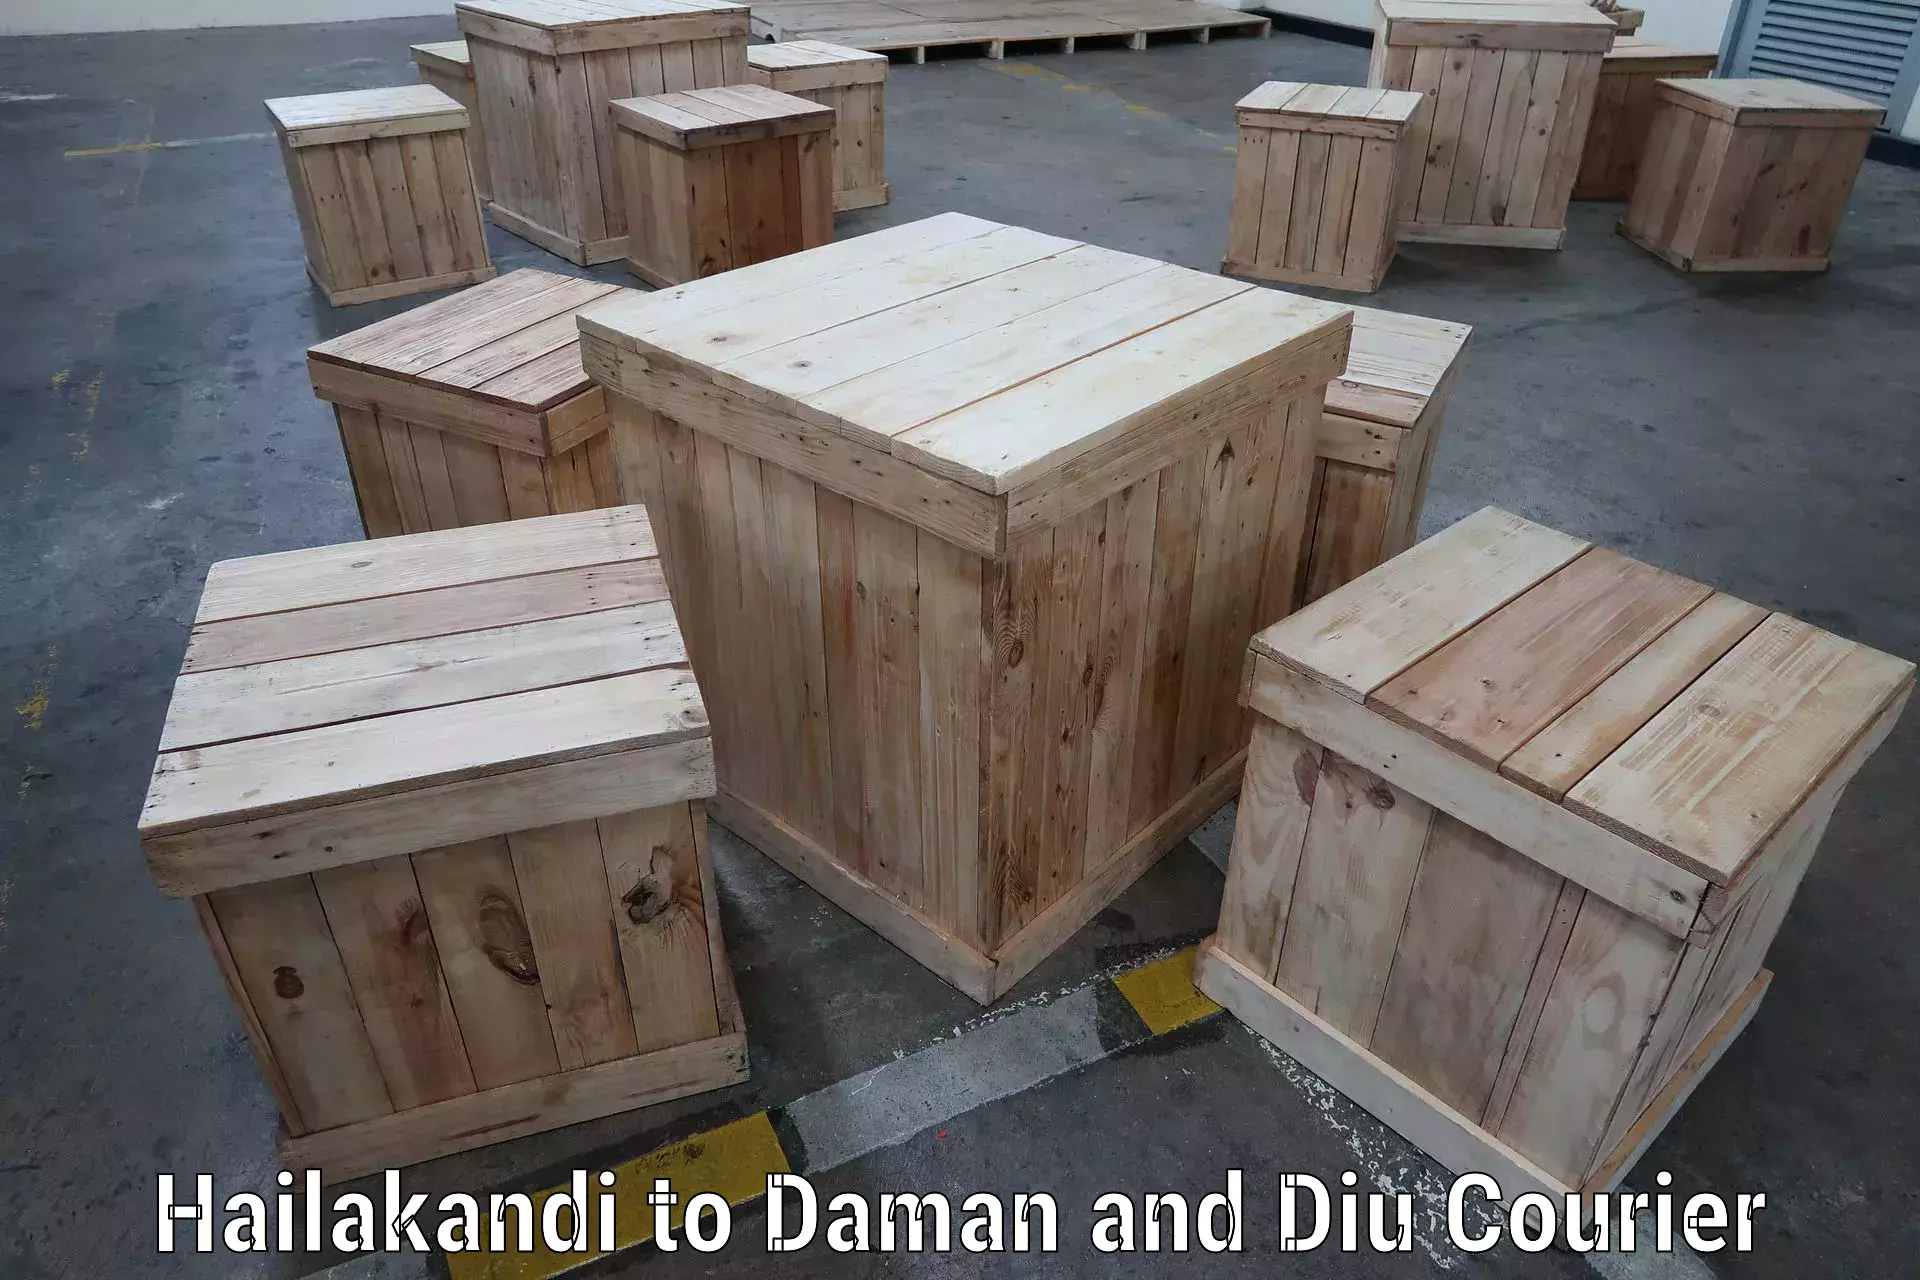 Efficient shipping operations Hailakandi to Daman and Diu